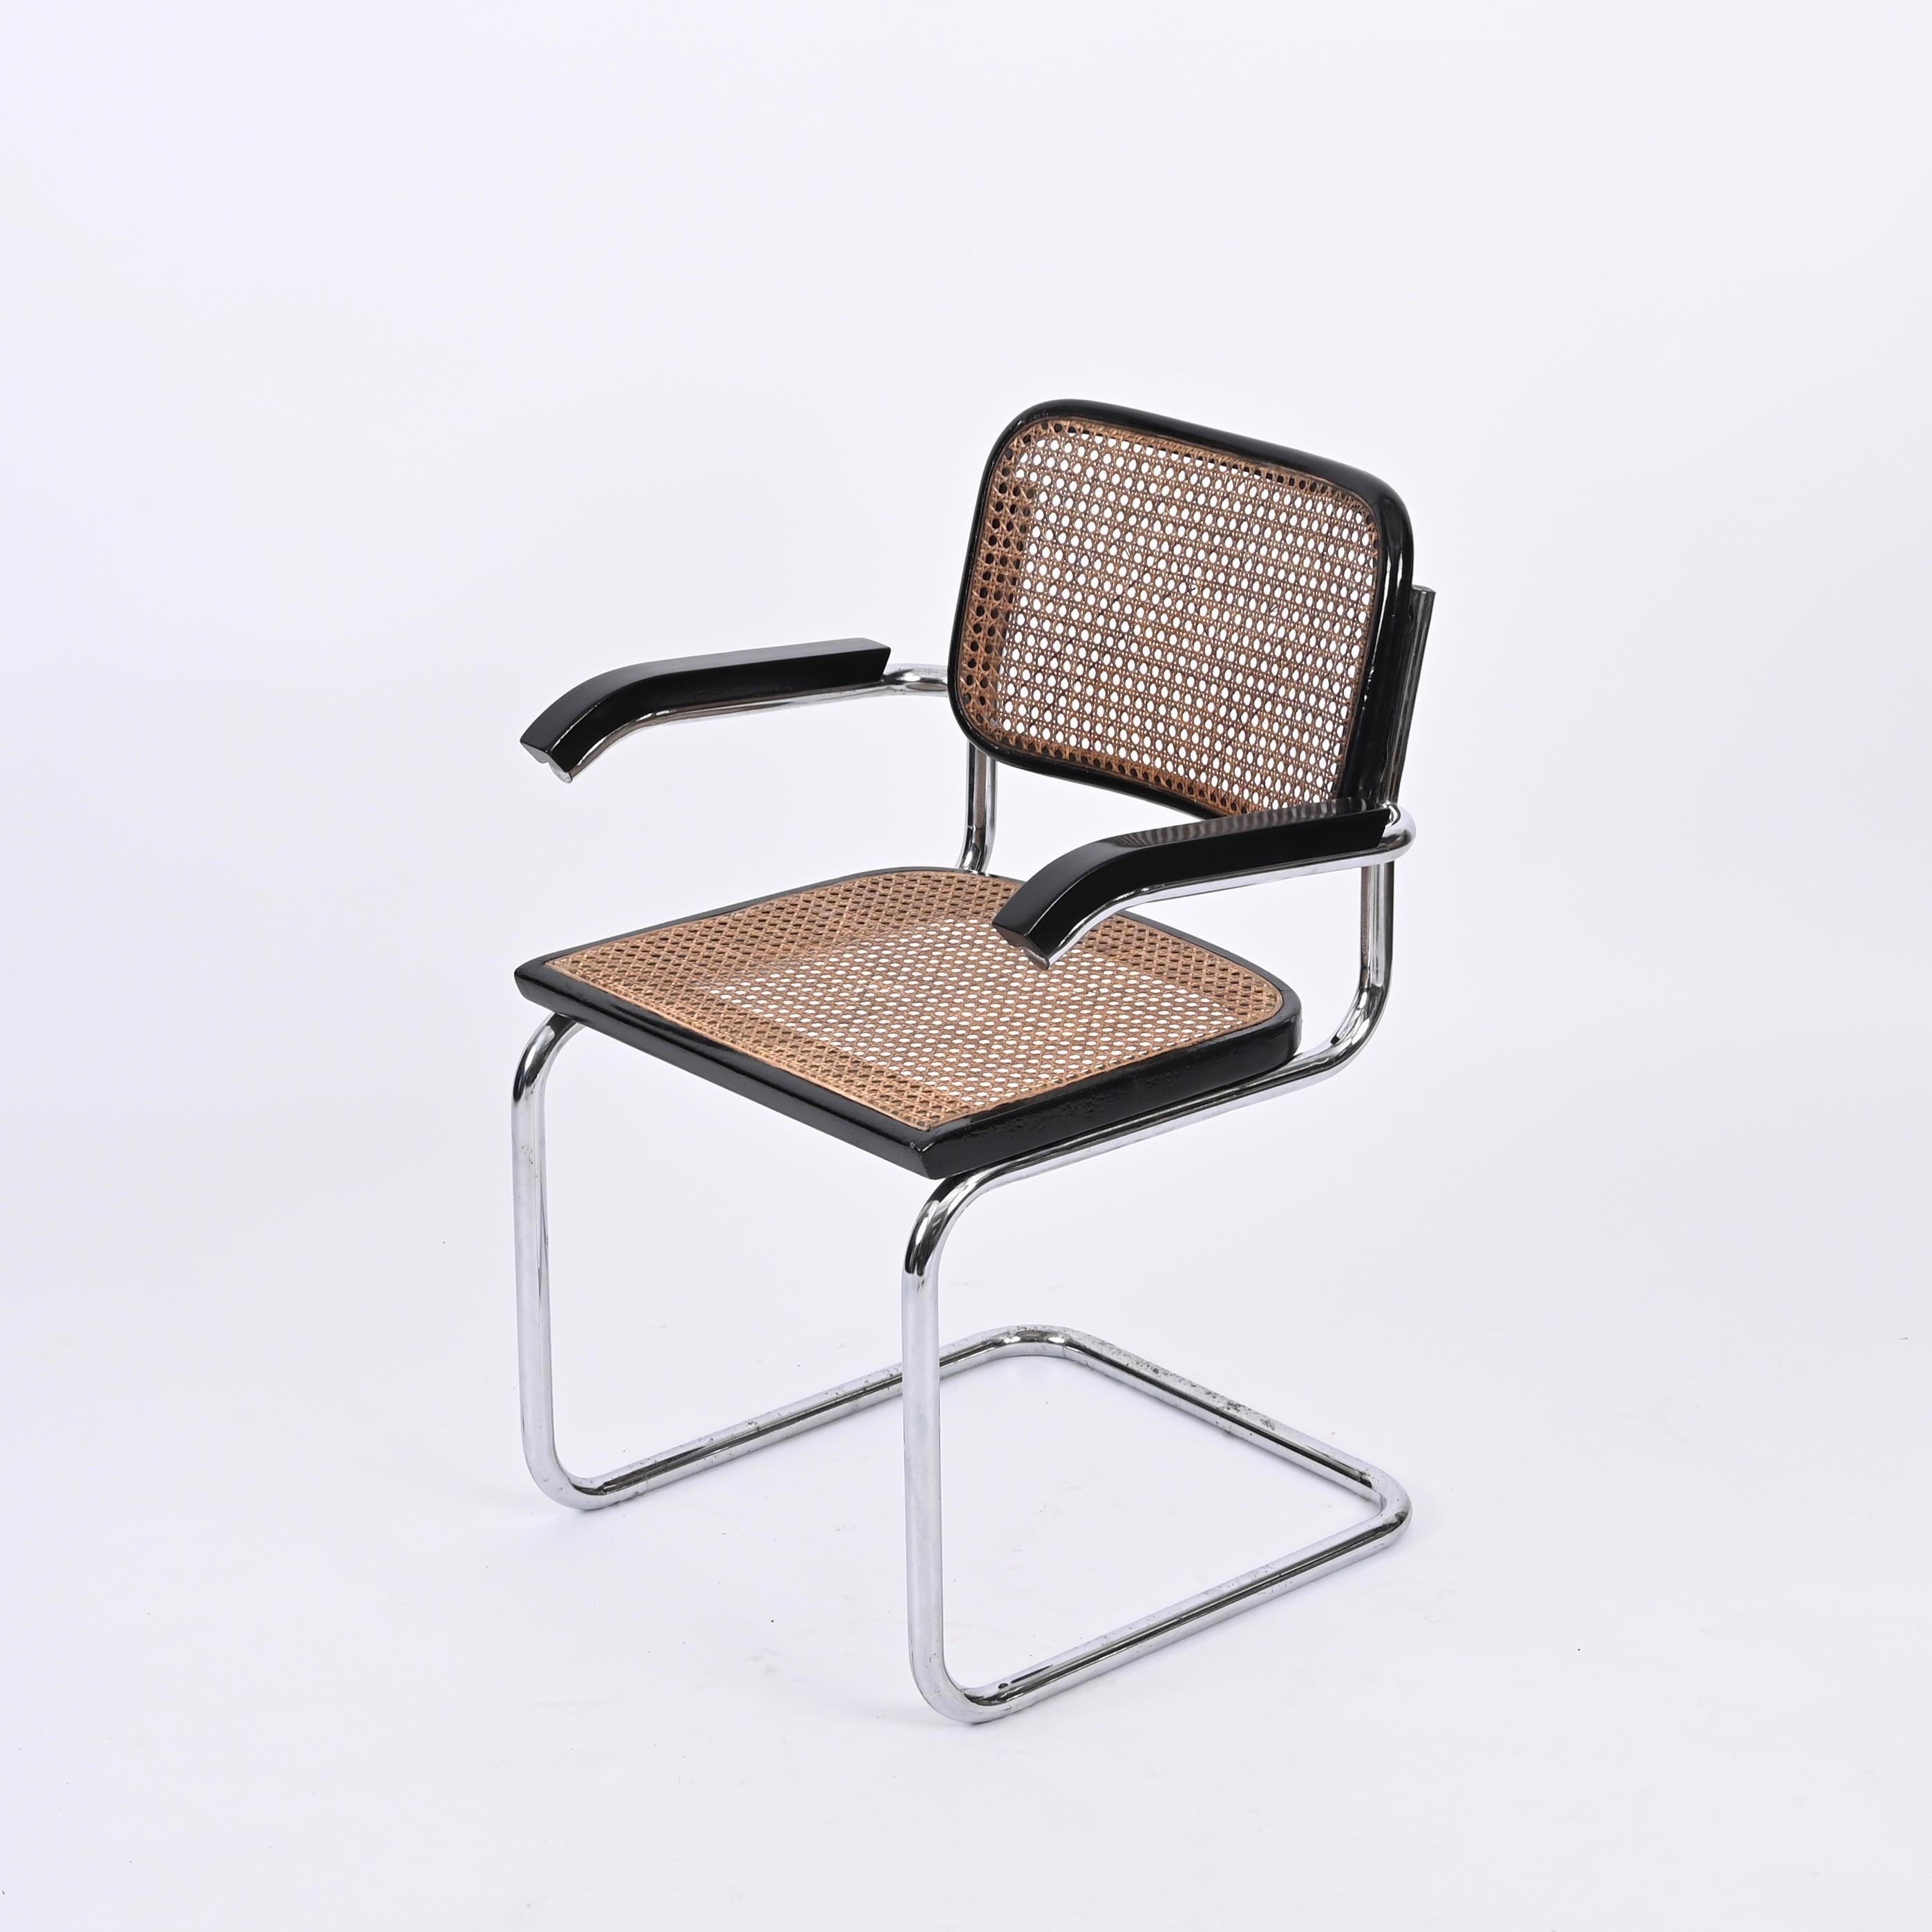 Wunderschöner Cesca-Sessel aus der Mitte des Jahrhunderts aus verchromtem Metall und geflochtenen Korbstühlen. Dieser schöne Stuhl wurde von Marcel Breuer entworfen und in den 1960er Jahren von Gavina in Italien hergestellt.

Dieser ikonische Stuhl